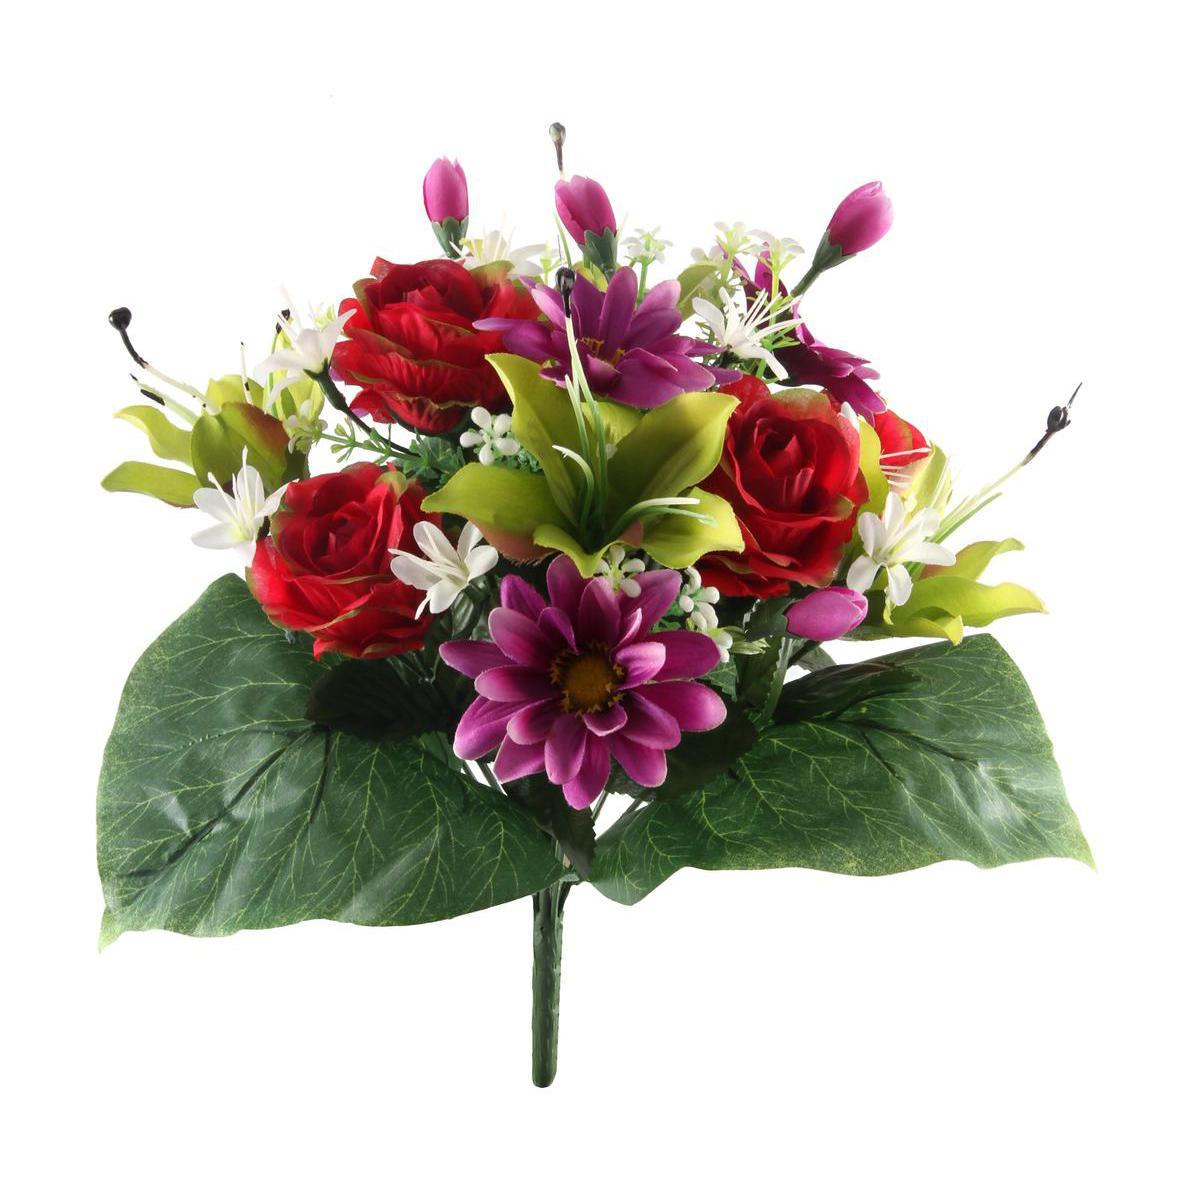 Bouquet de roses, gerberas et lys - Plastique et polyester - Hauteur 36 cm - Rouge, violet, jaune et orange